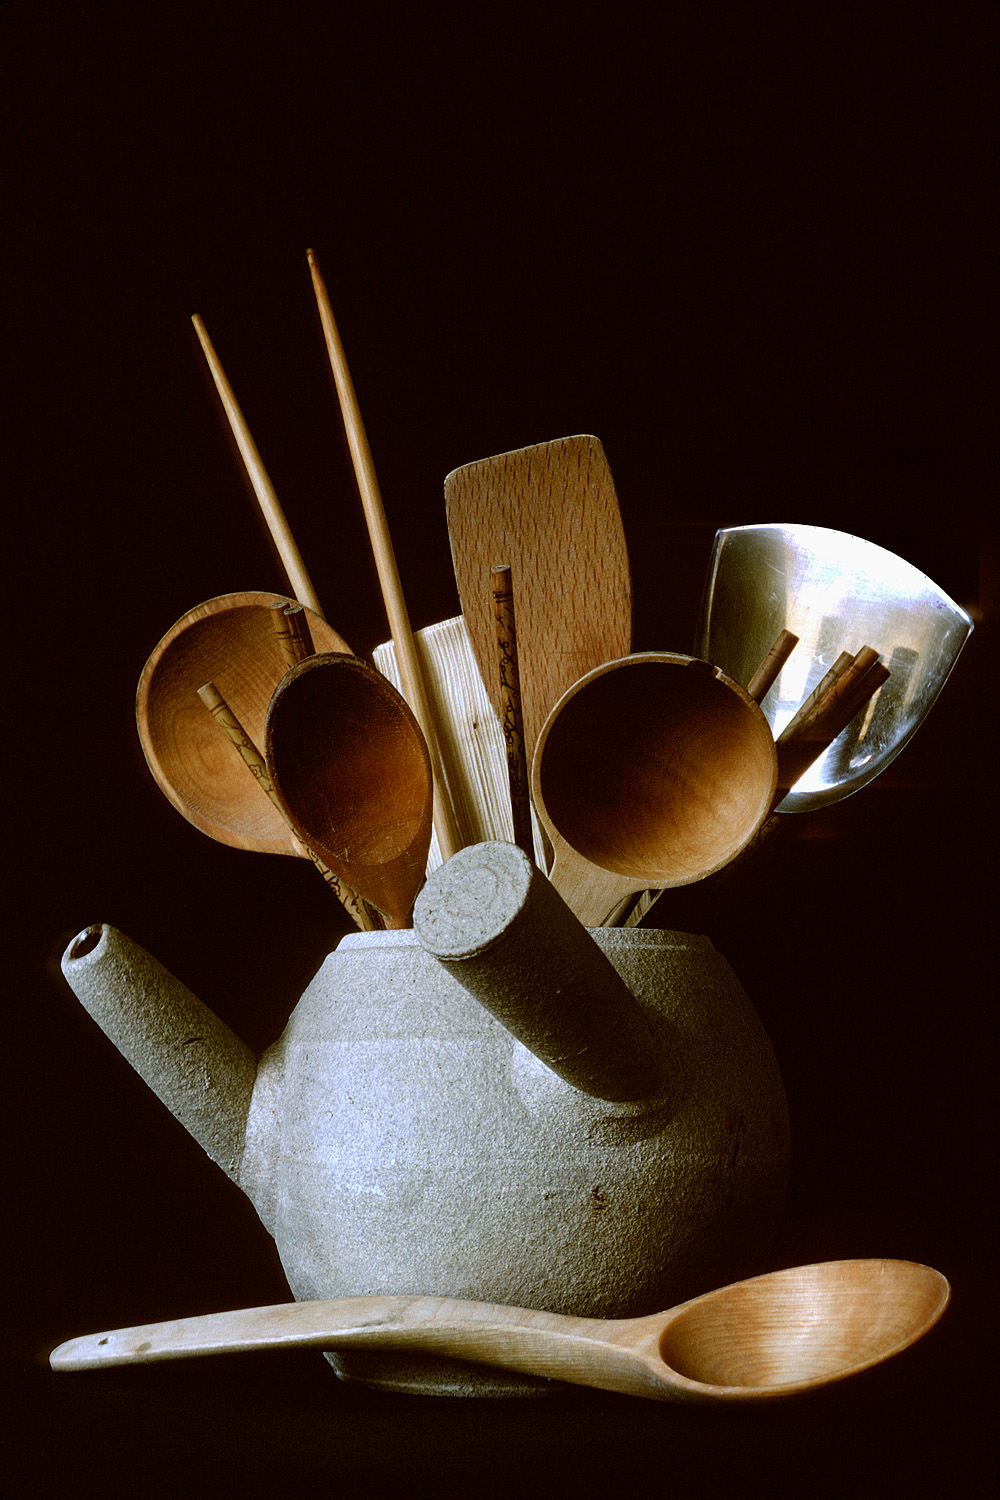 bill-hocker-chinese-spoons-1978